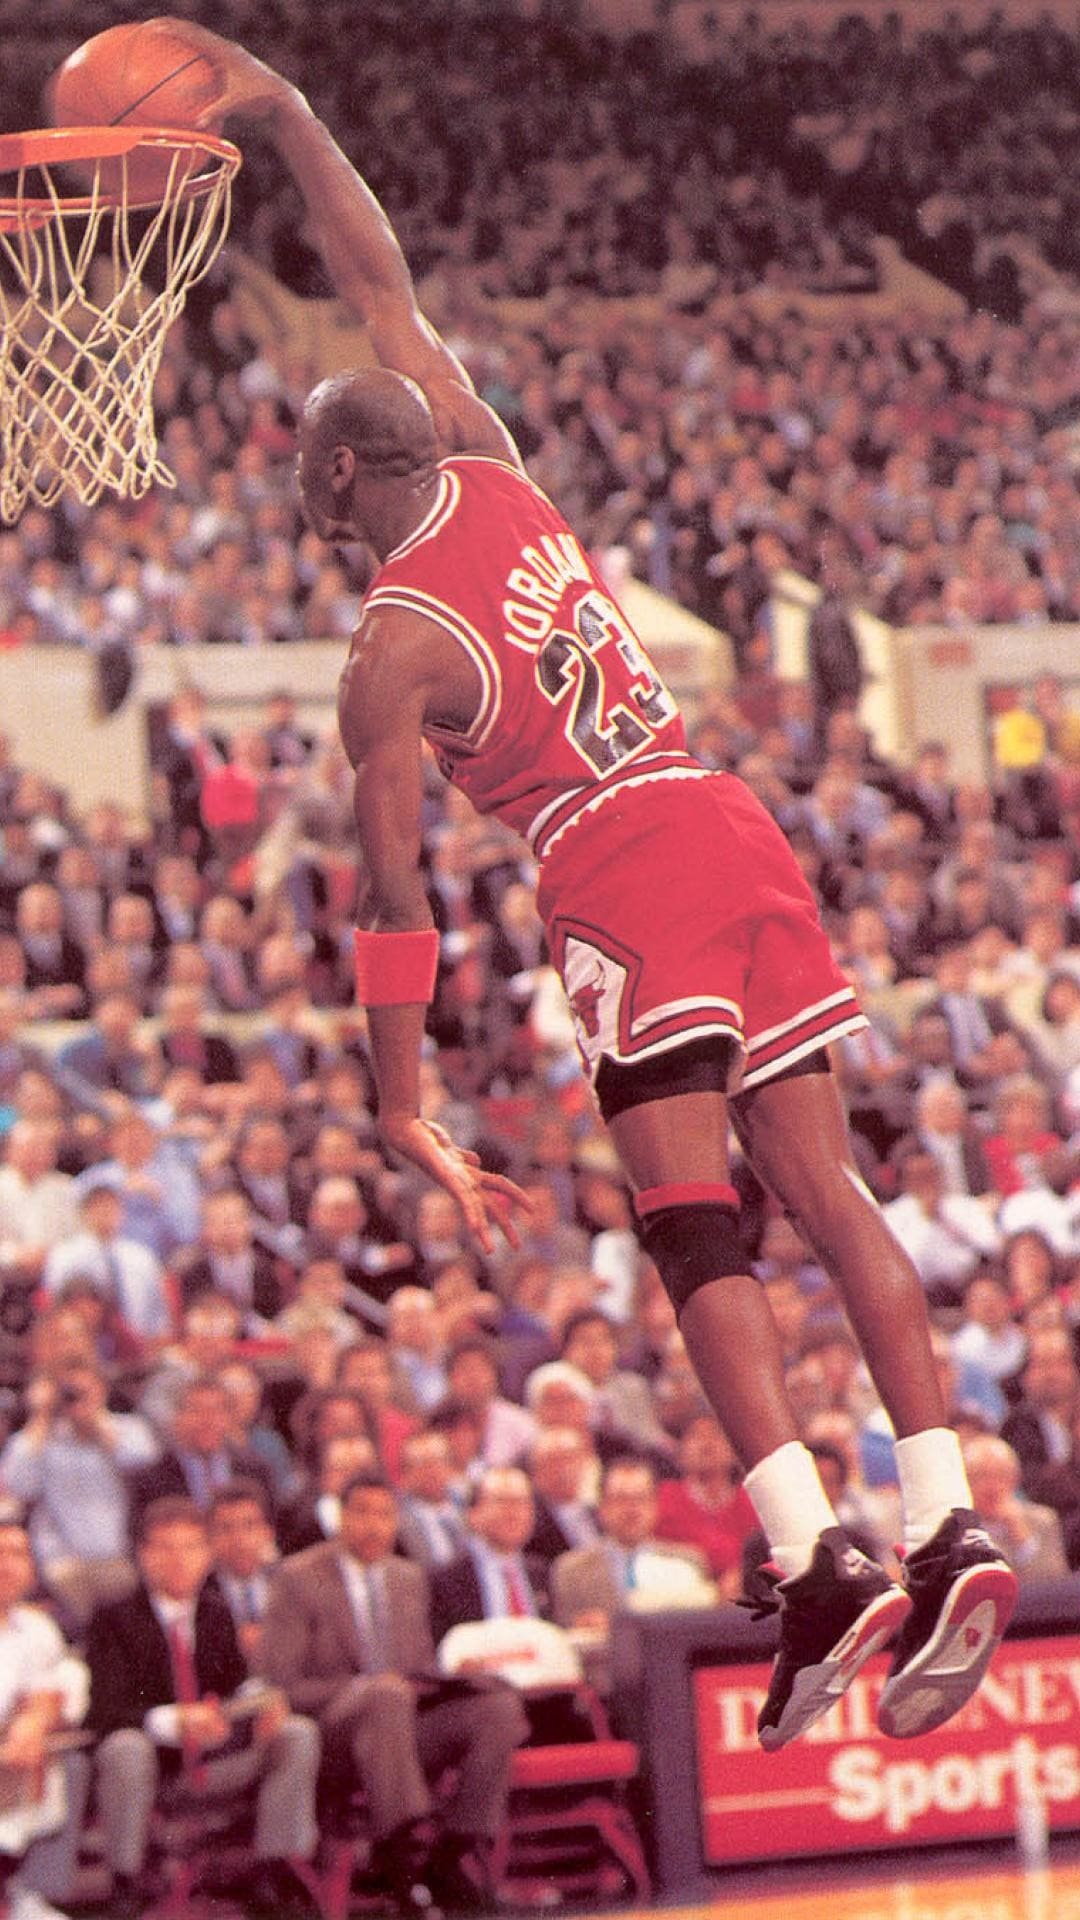 Michael Jordan Phone Wallpaper Michael Jordan Phone Background, Image & Photo